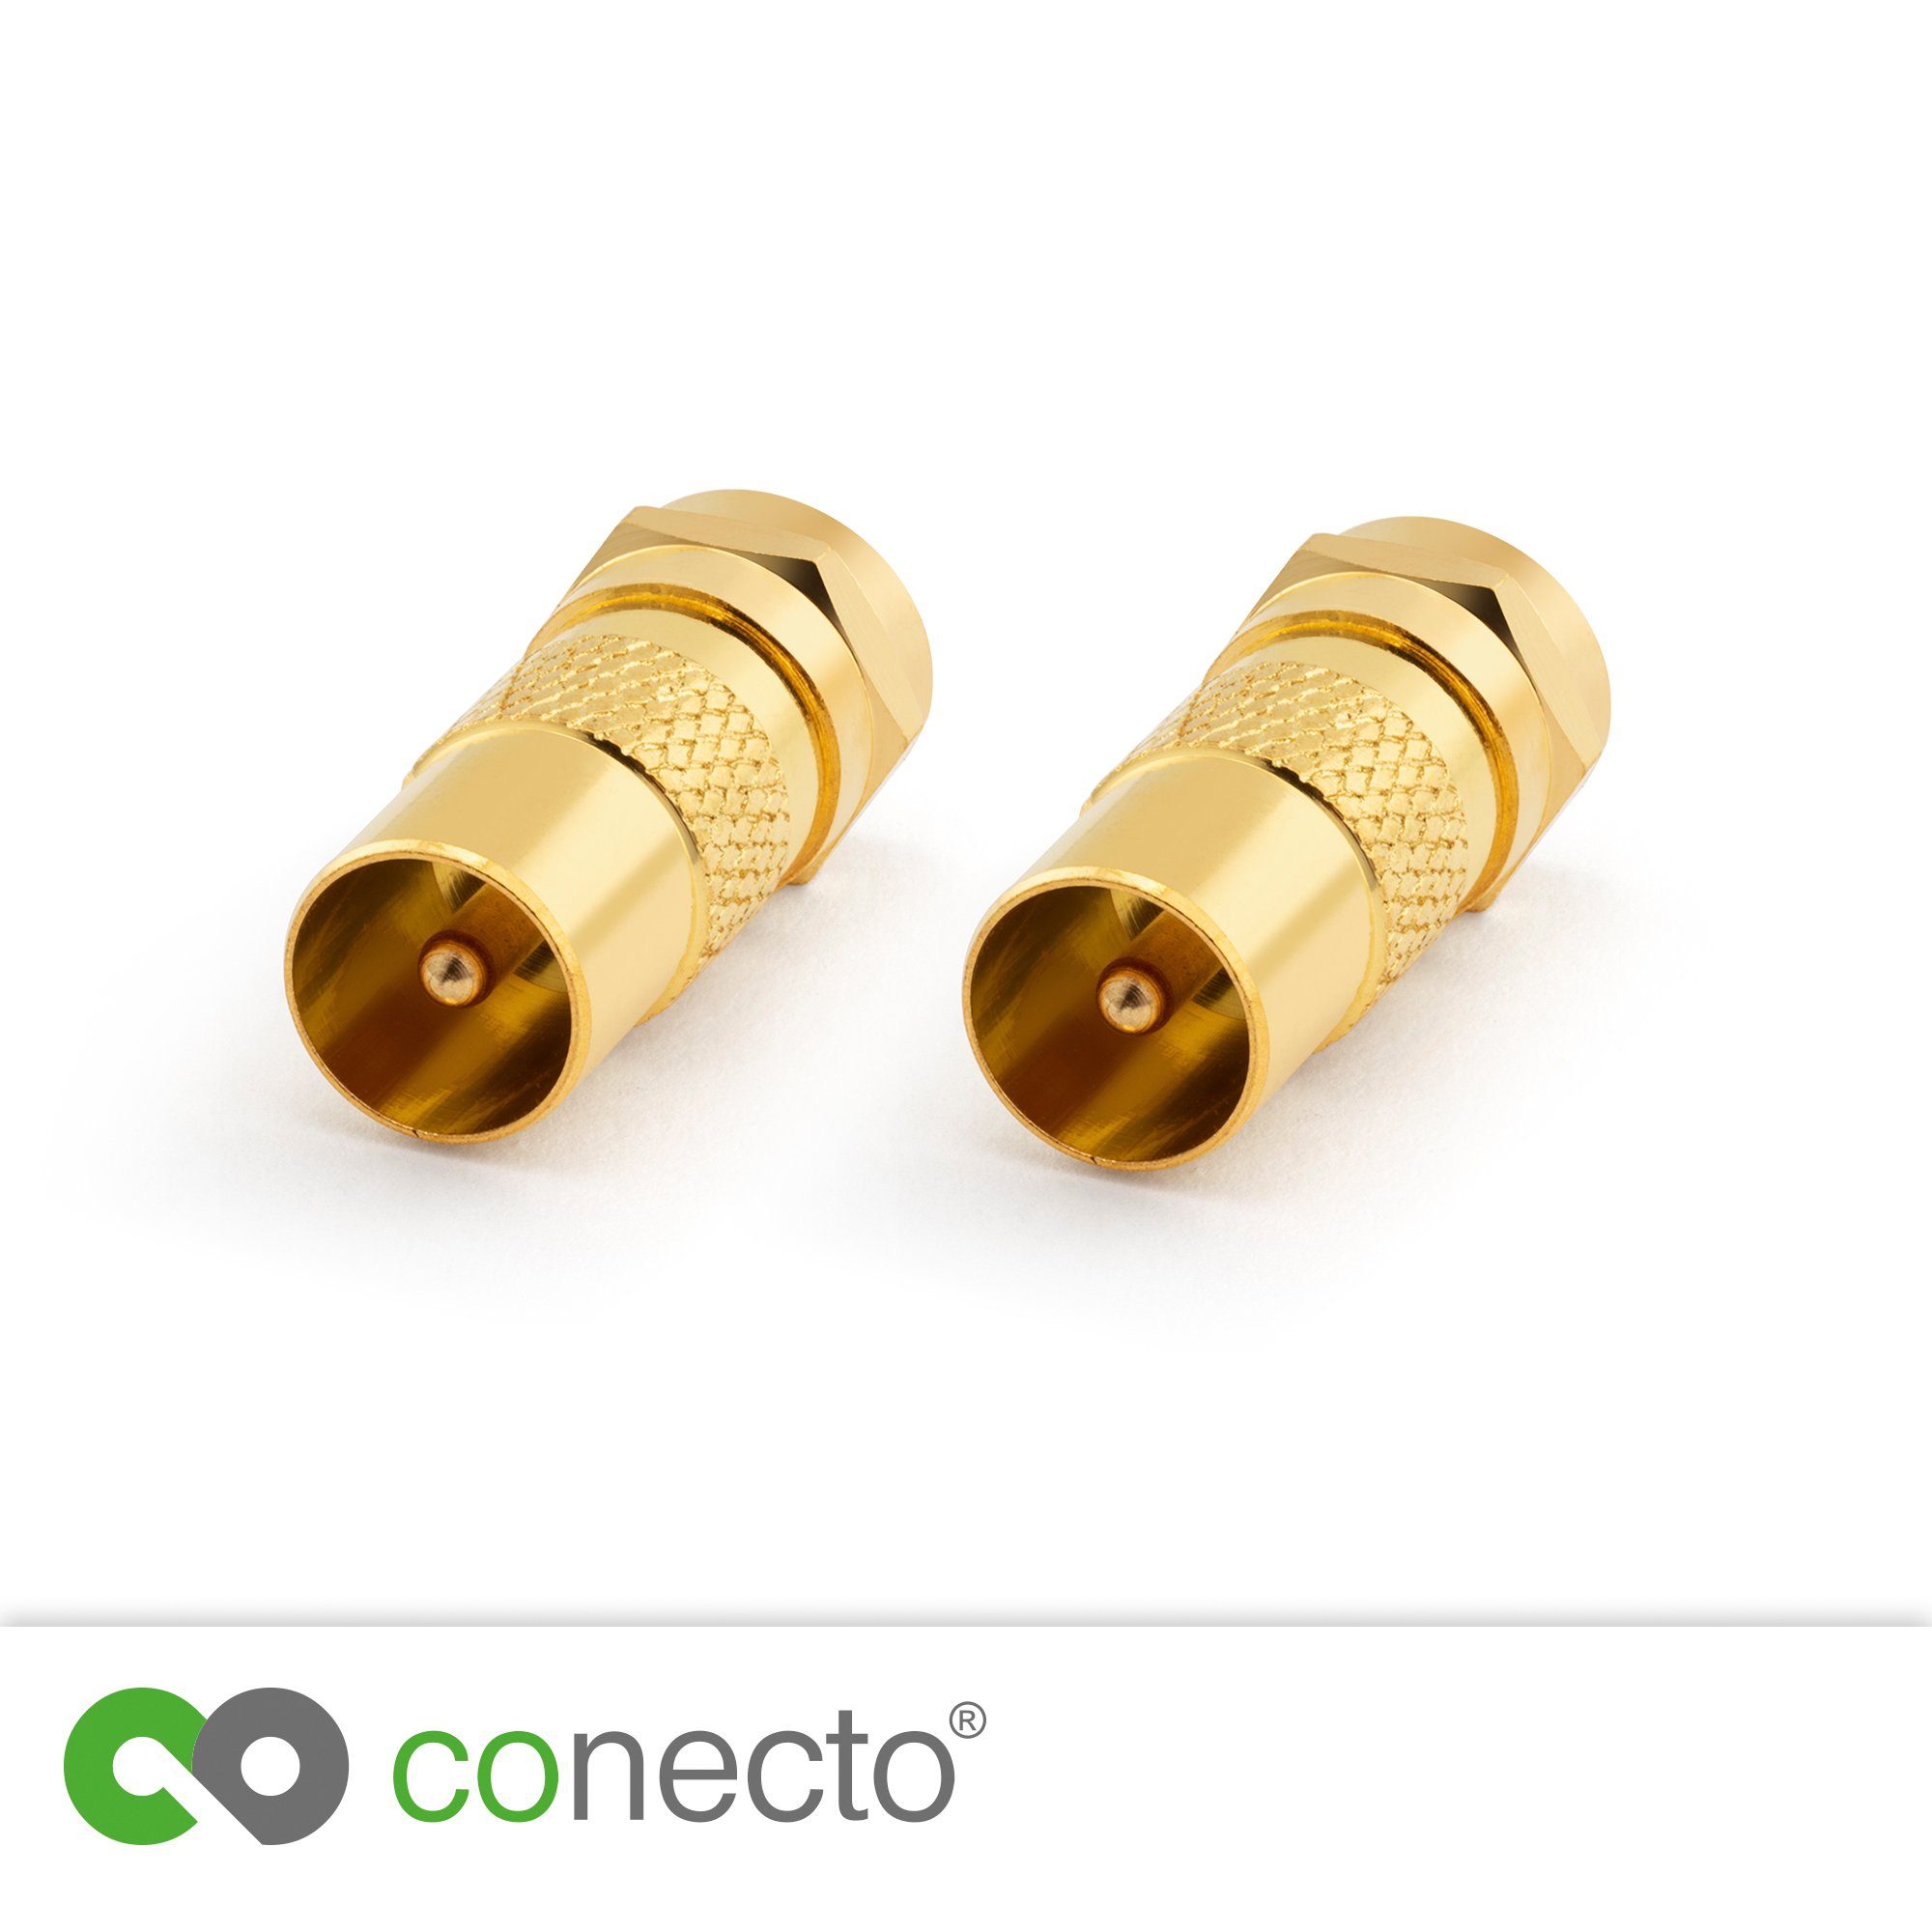 SAT-Kabel Verbi IEC-Stecker, auf zum Antennen-Adapter, F-Stecker Adapter conecto conecto